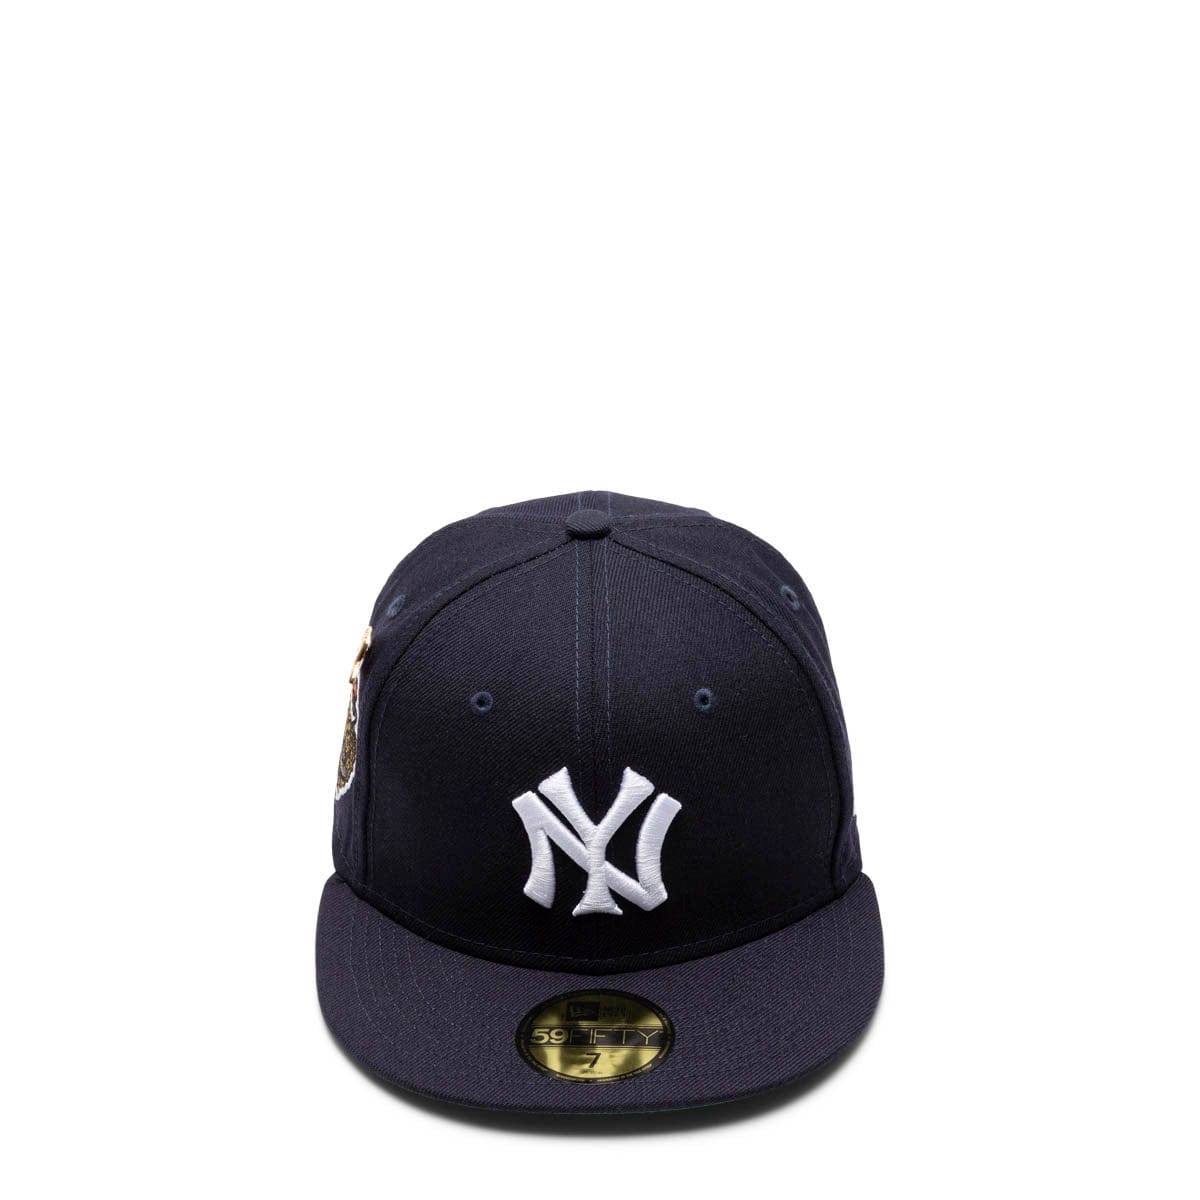 1927 yankees hat